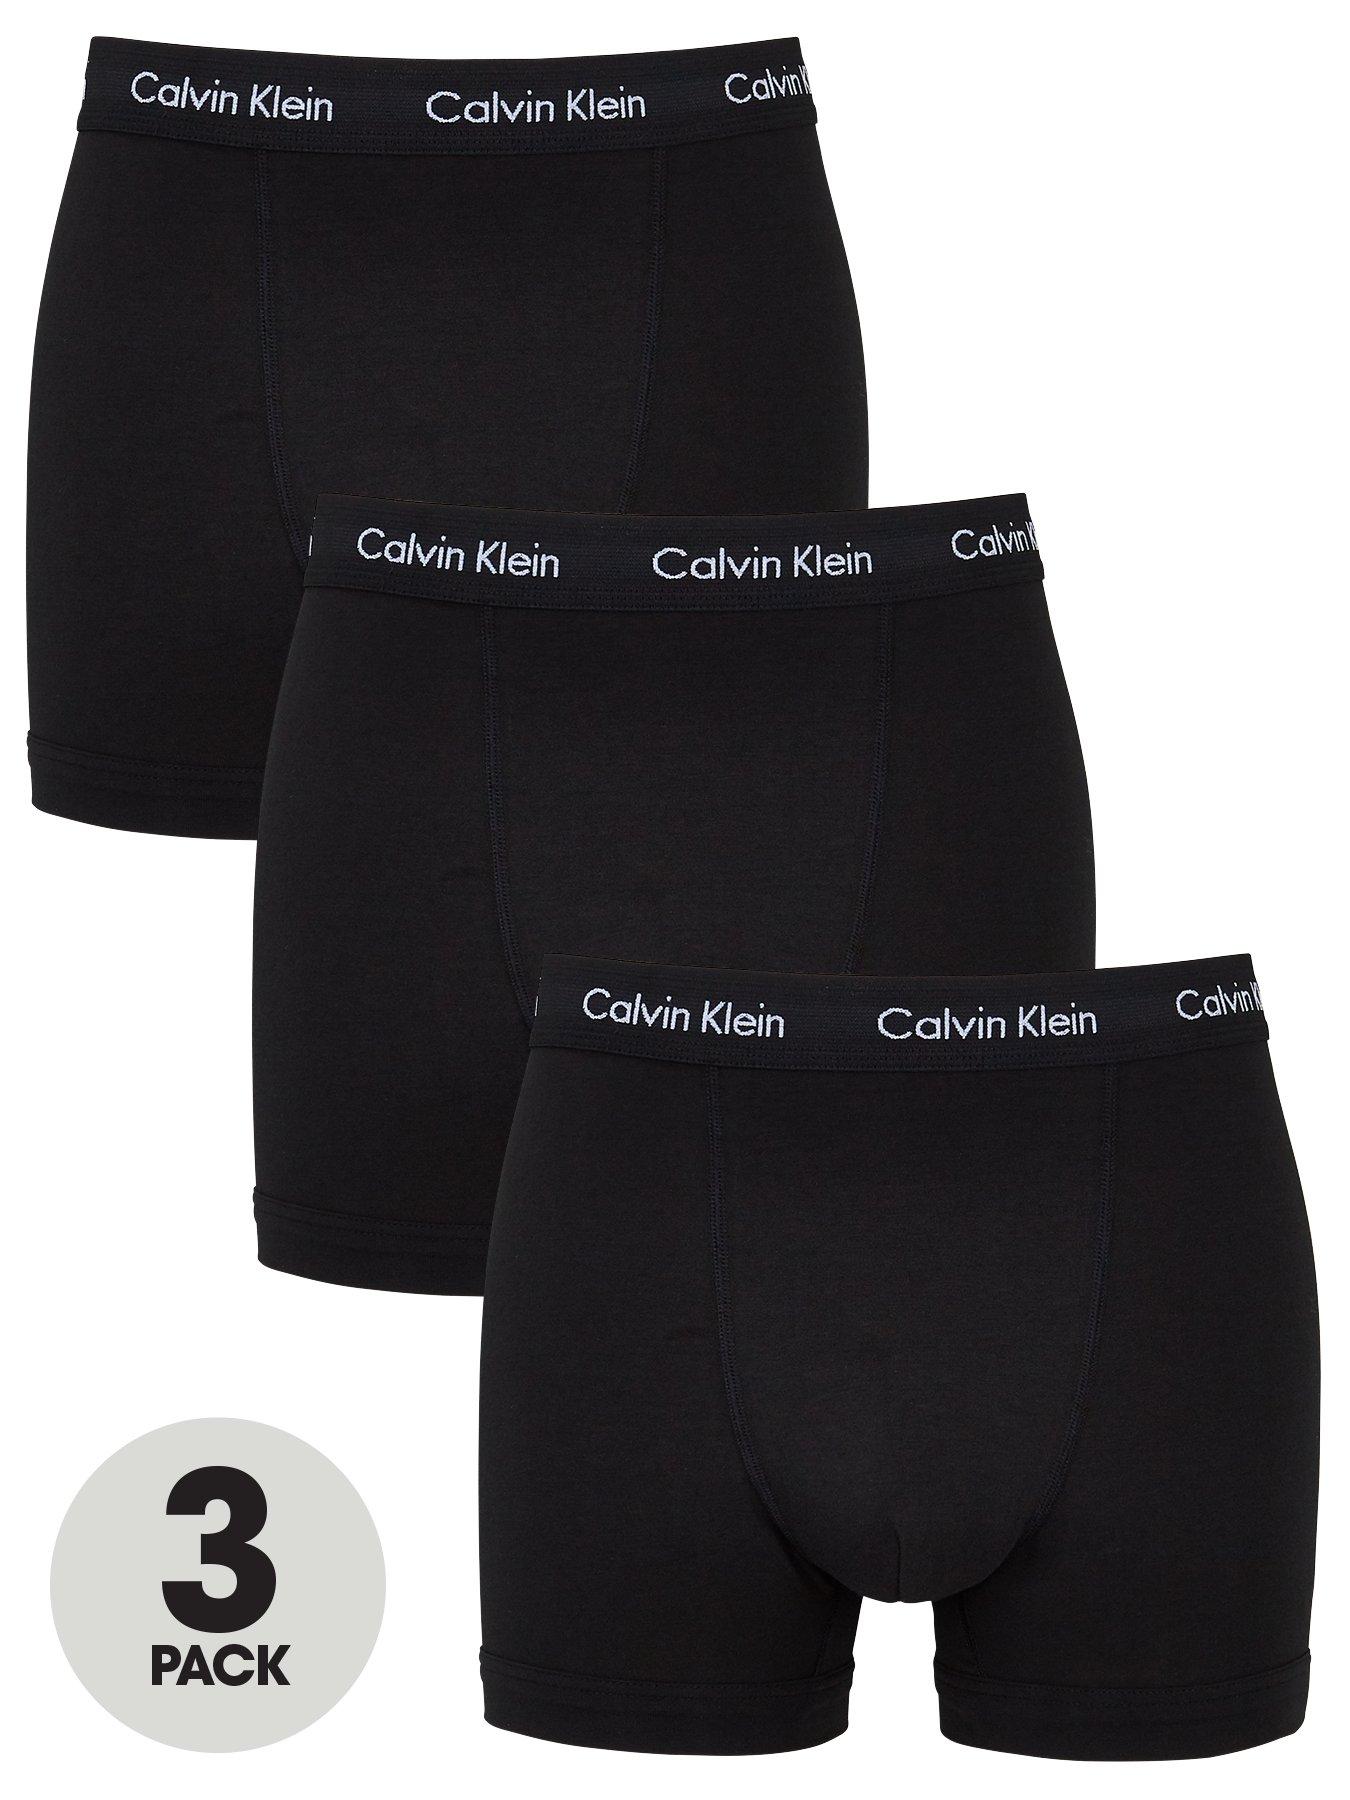 Calvin Klein Core 3 Pack Trunks - Black